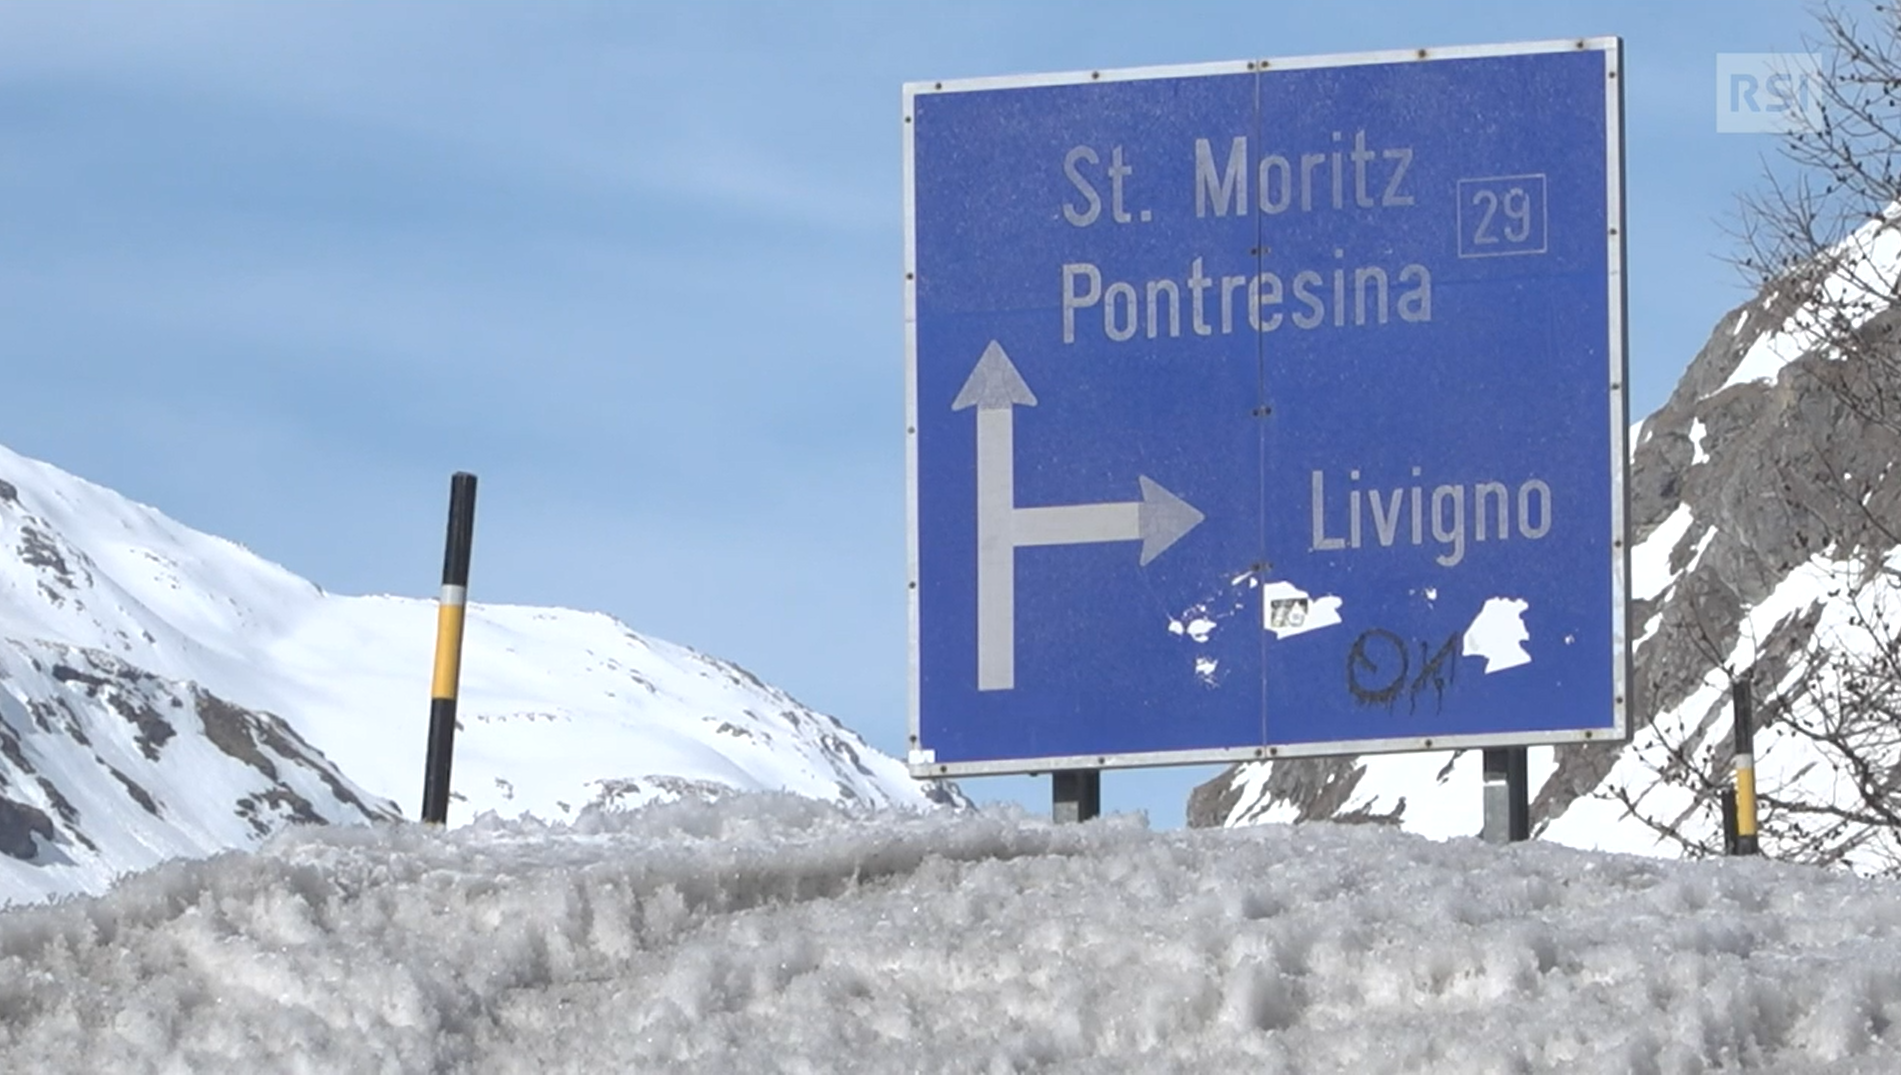 Cartello stradale blu che indica St.Moritz (dritto) e Livigno (destra) in ambiente alpino innevato